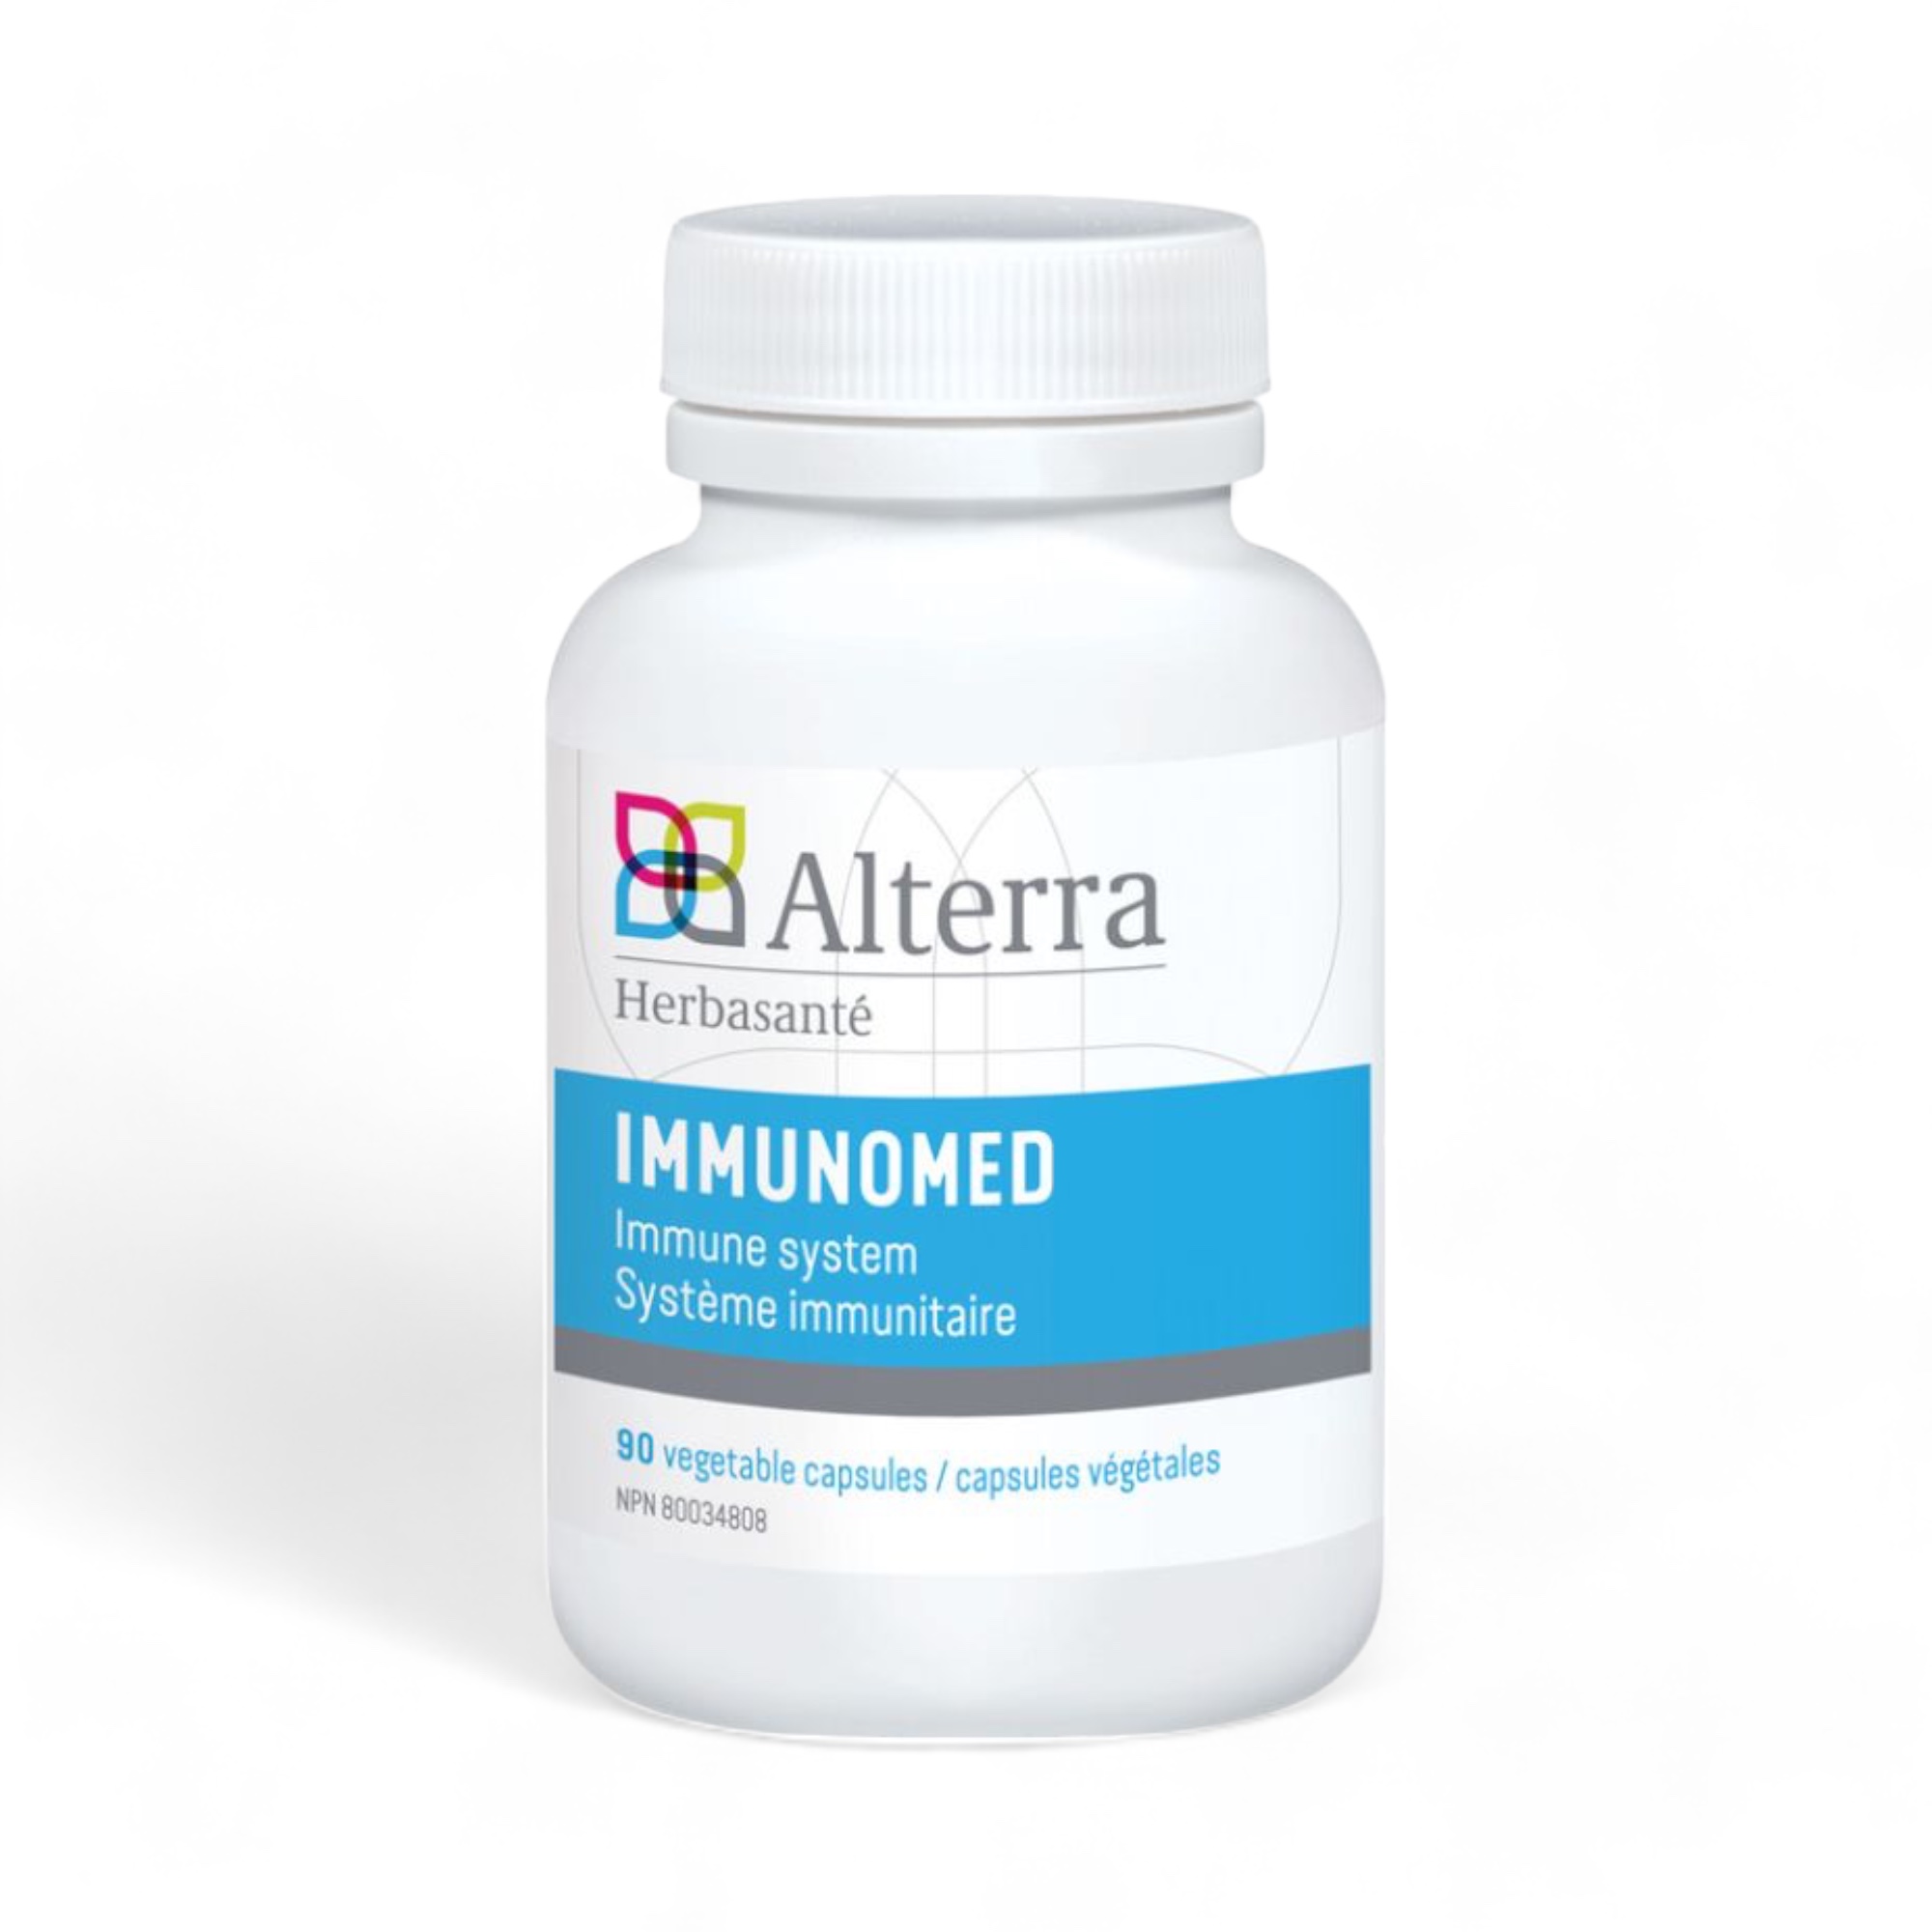 Immunomed 90 capsules Alterra